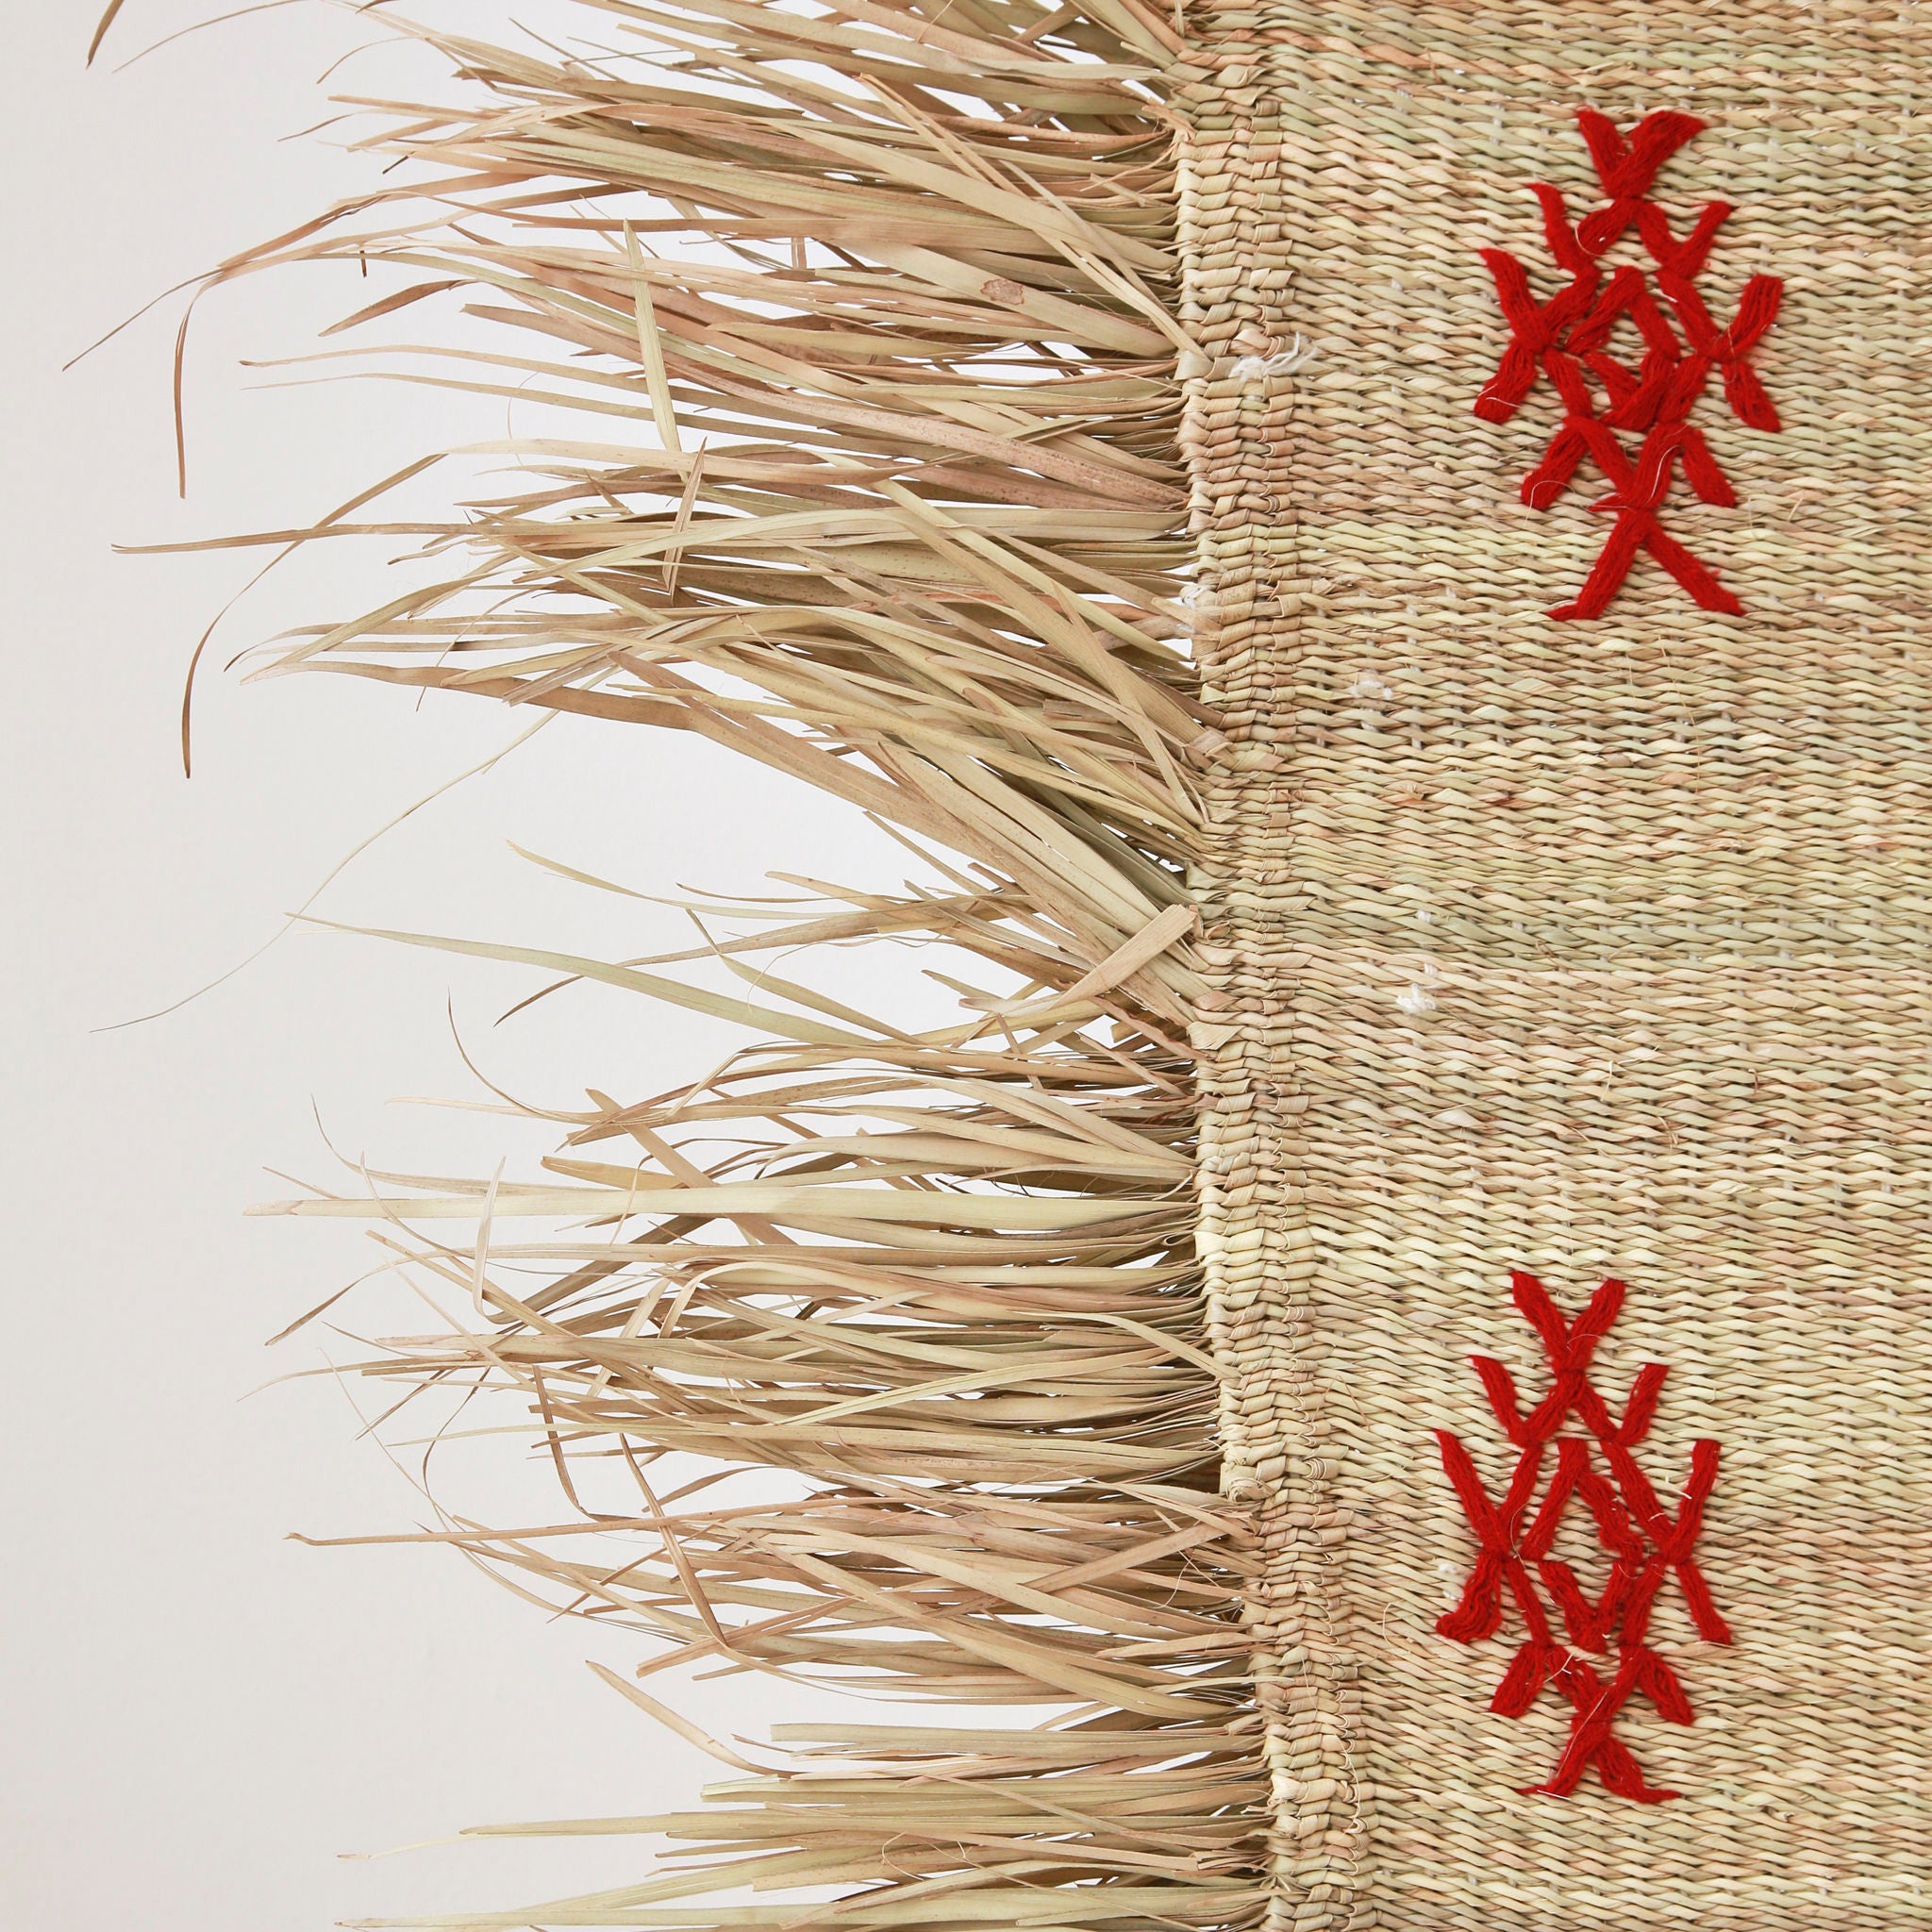 dettaglio della frangia di una piccola stuoia hassira intrecciata con paglia di palma e ricamata con simboli in lana rossa